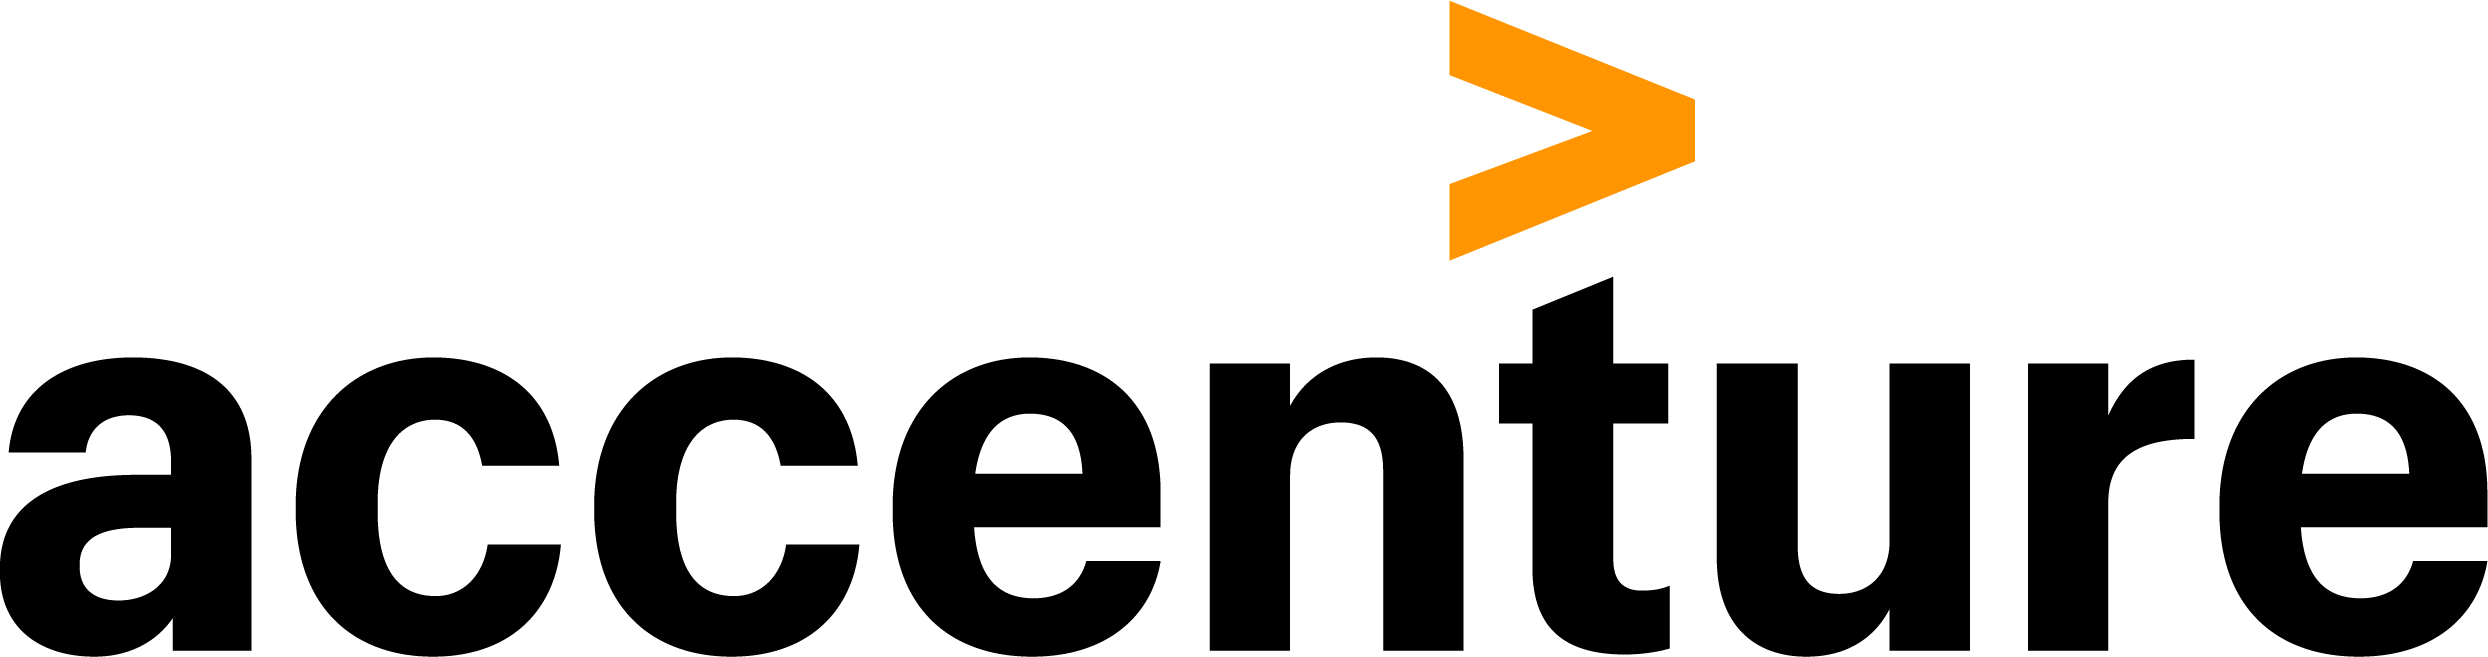 Accenture Technology Logo - Accenture | TeenTech